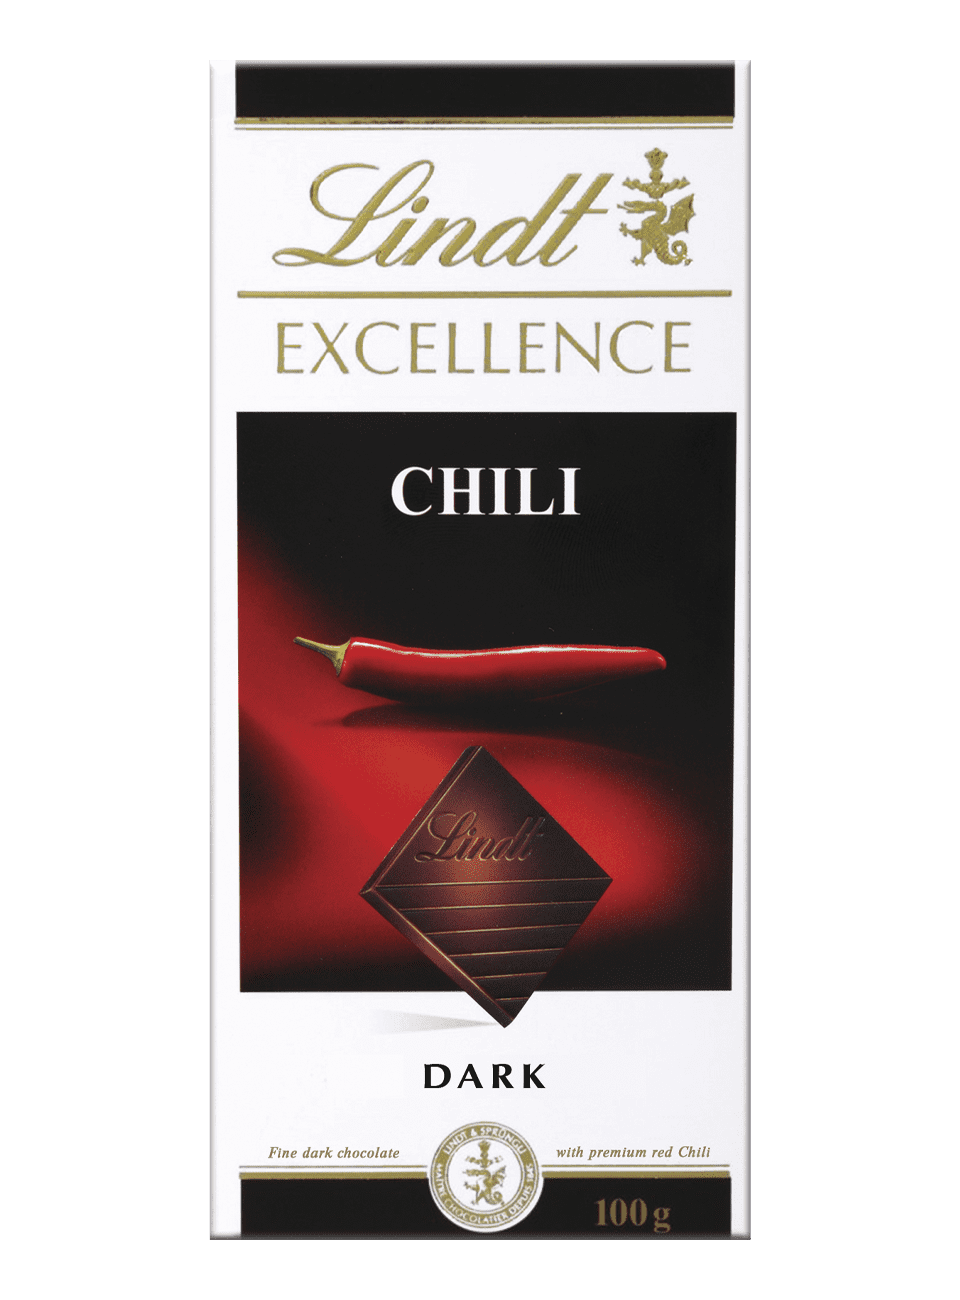 Превосходный темный шоколад Линдт с экстрактом перца чили 100г (20/1 920)